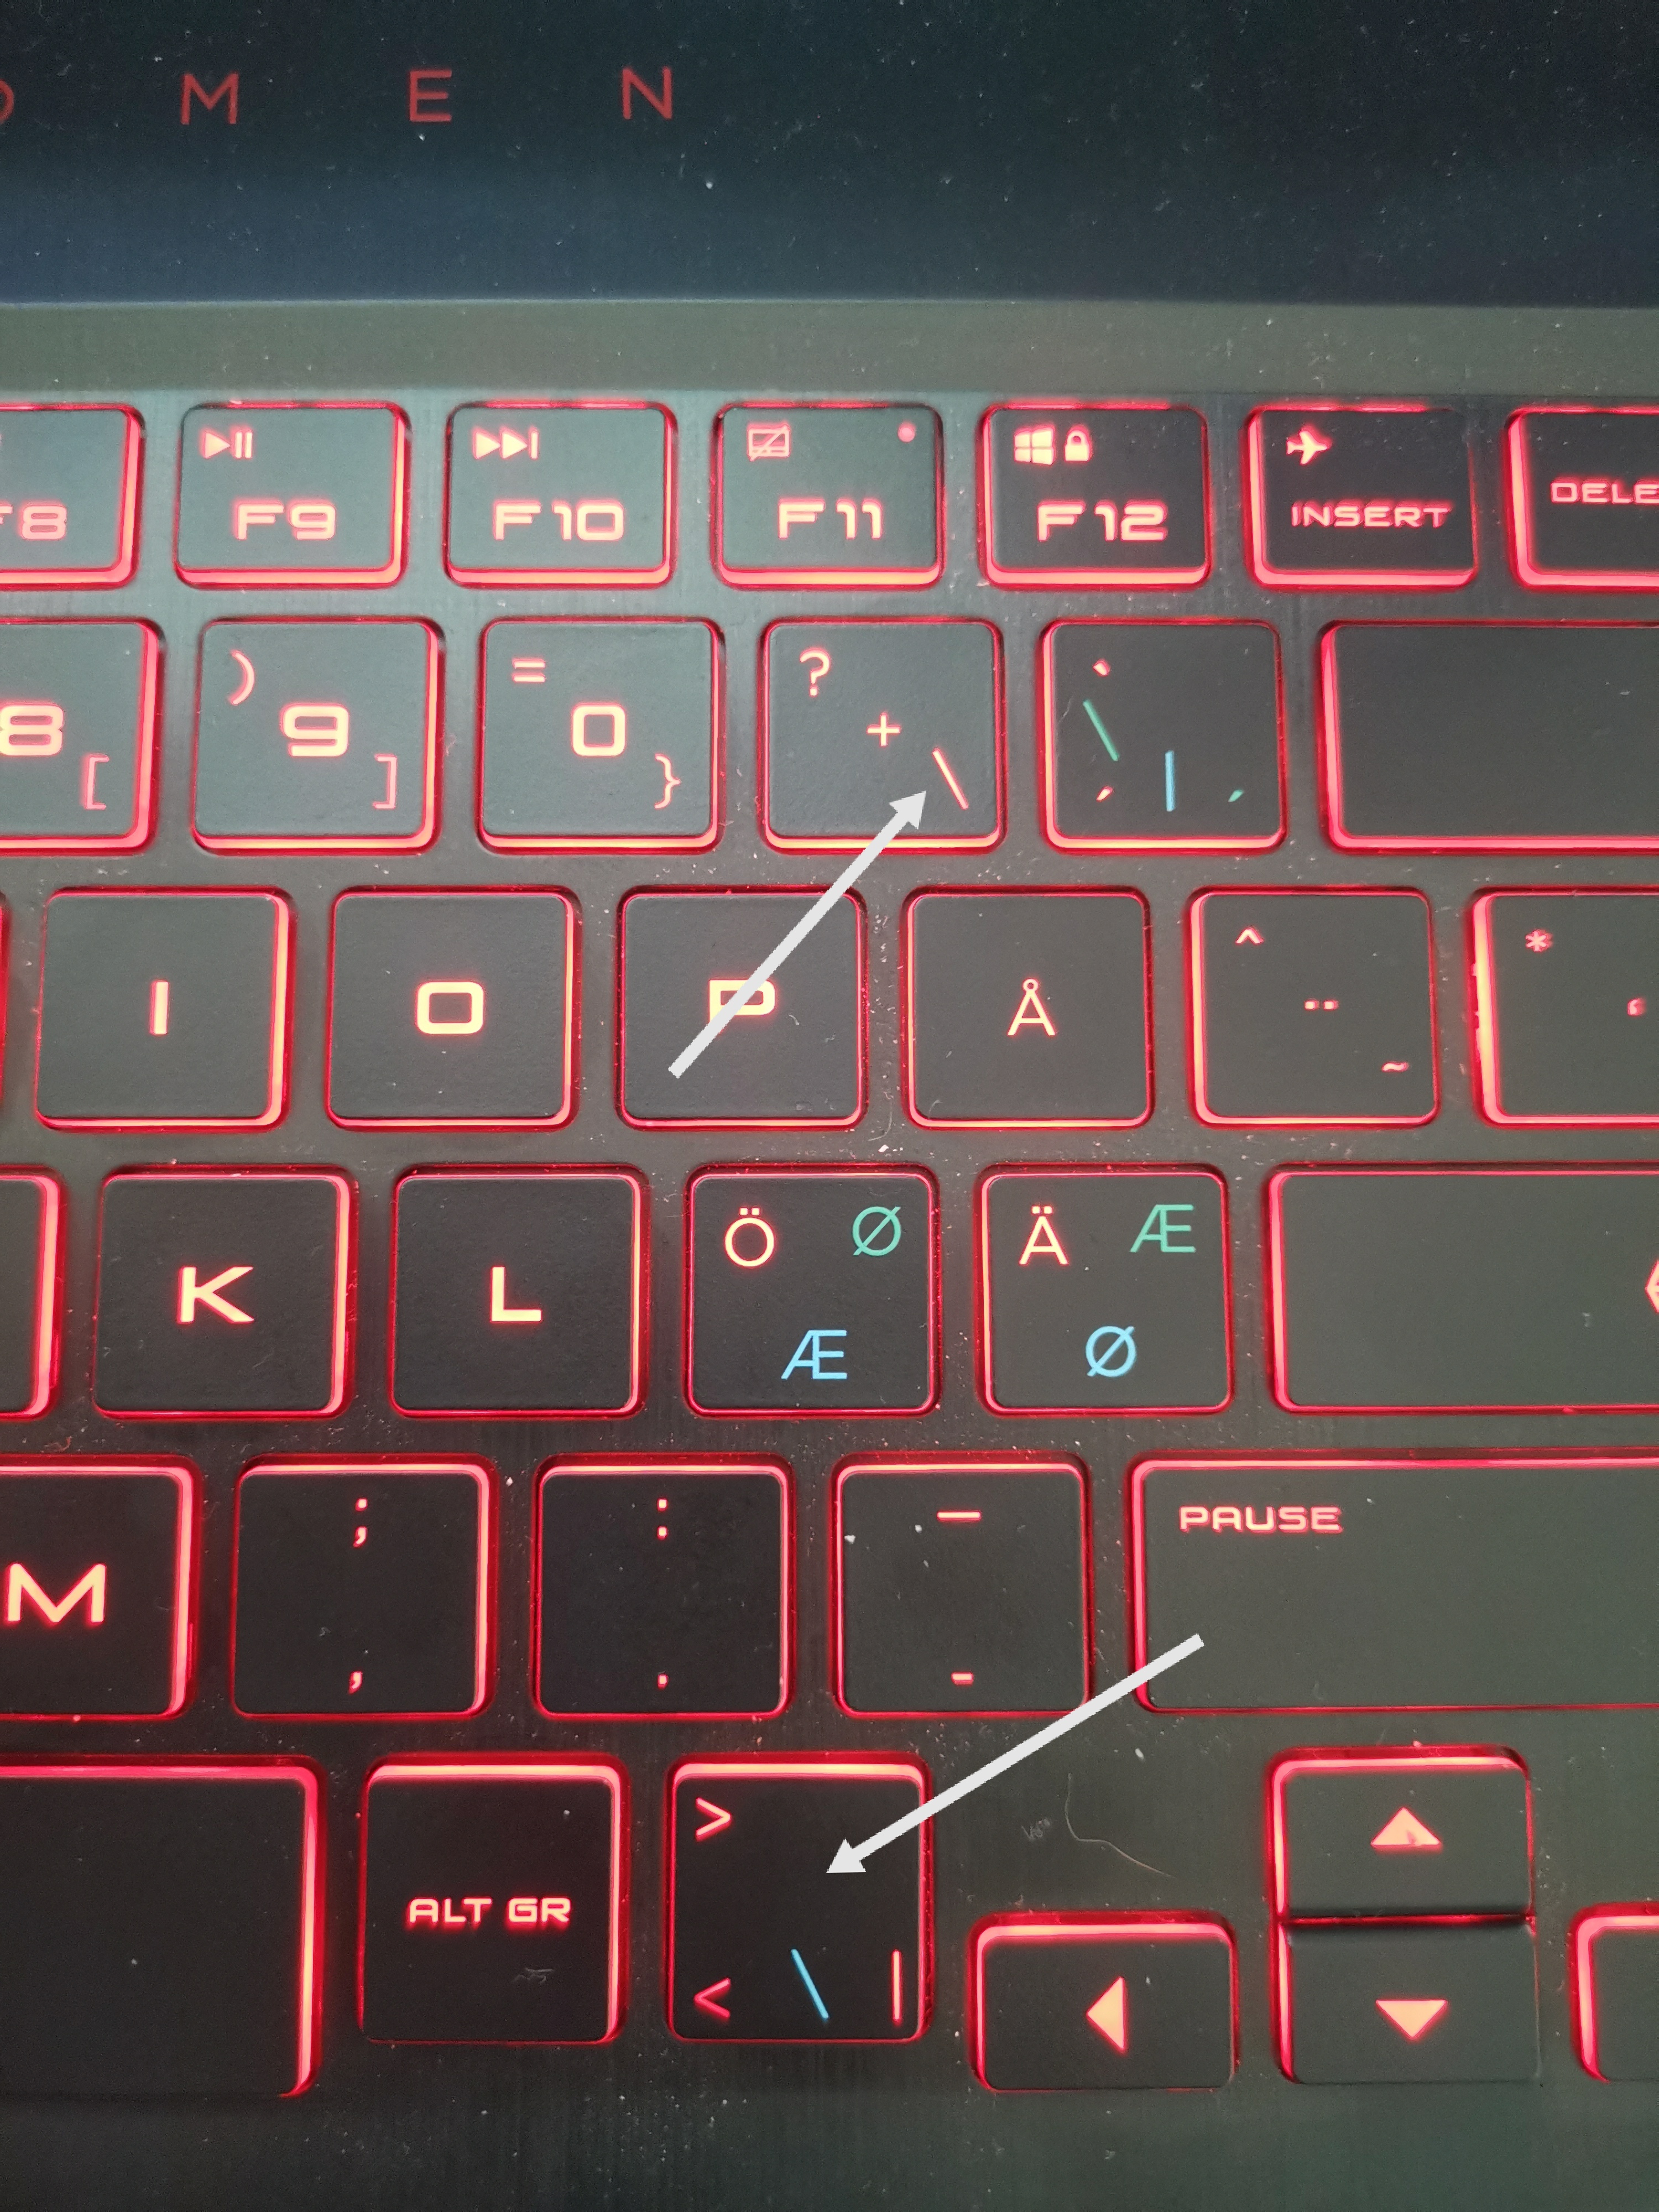 slash symbol in keyboard। 